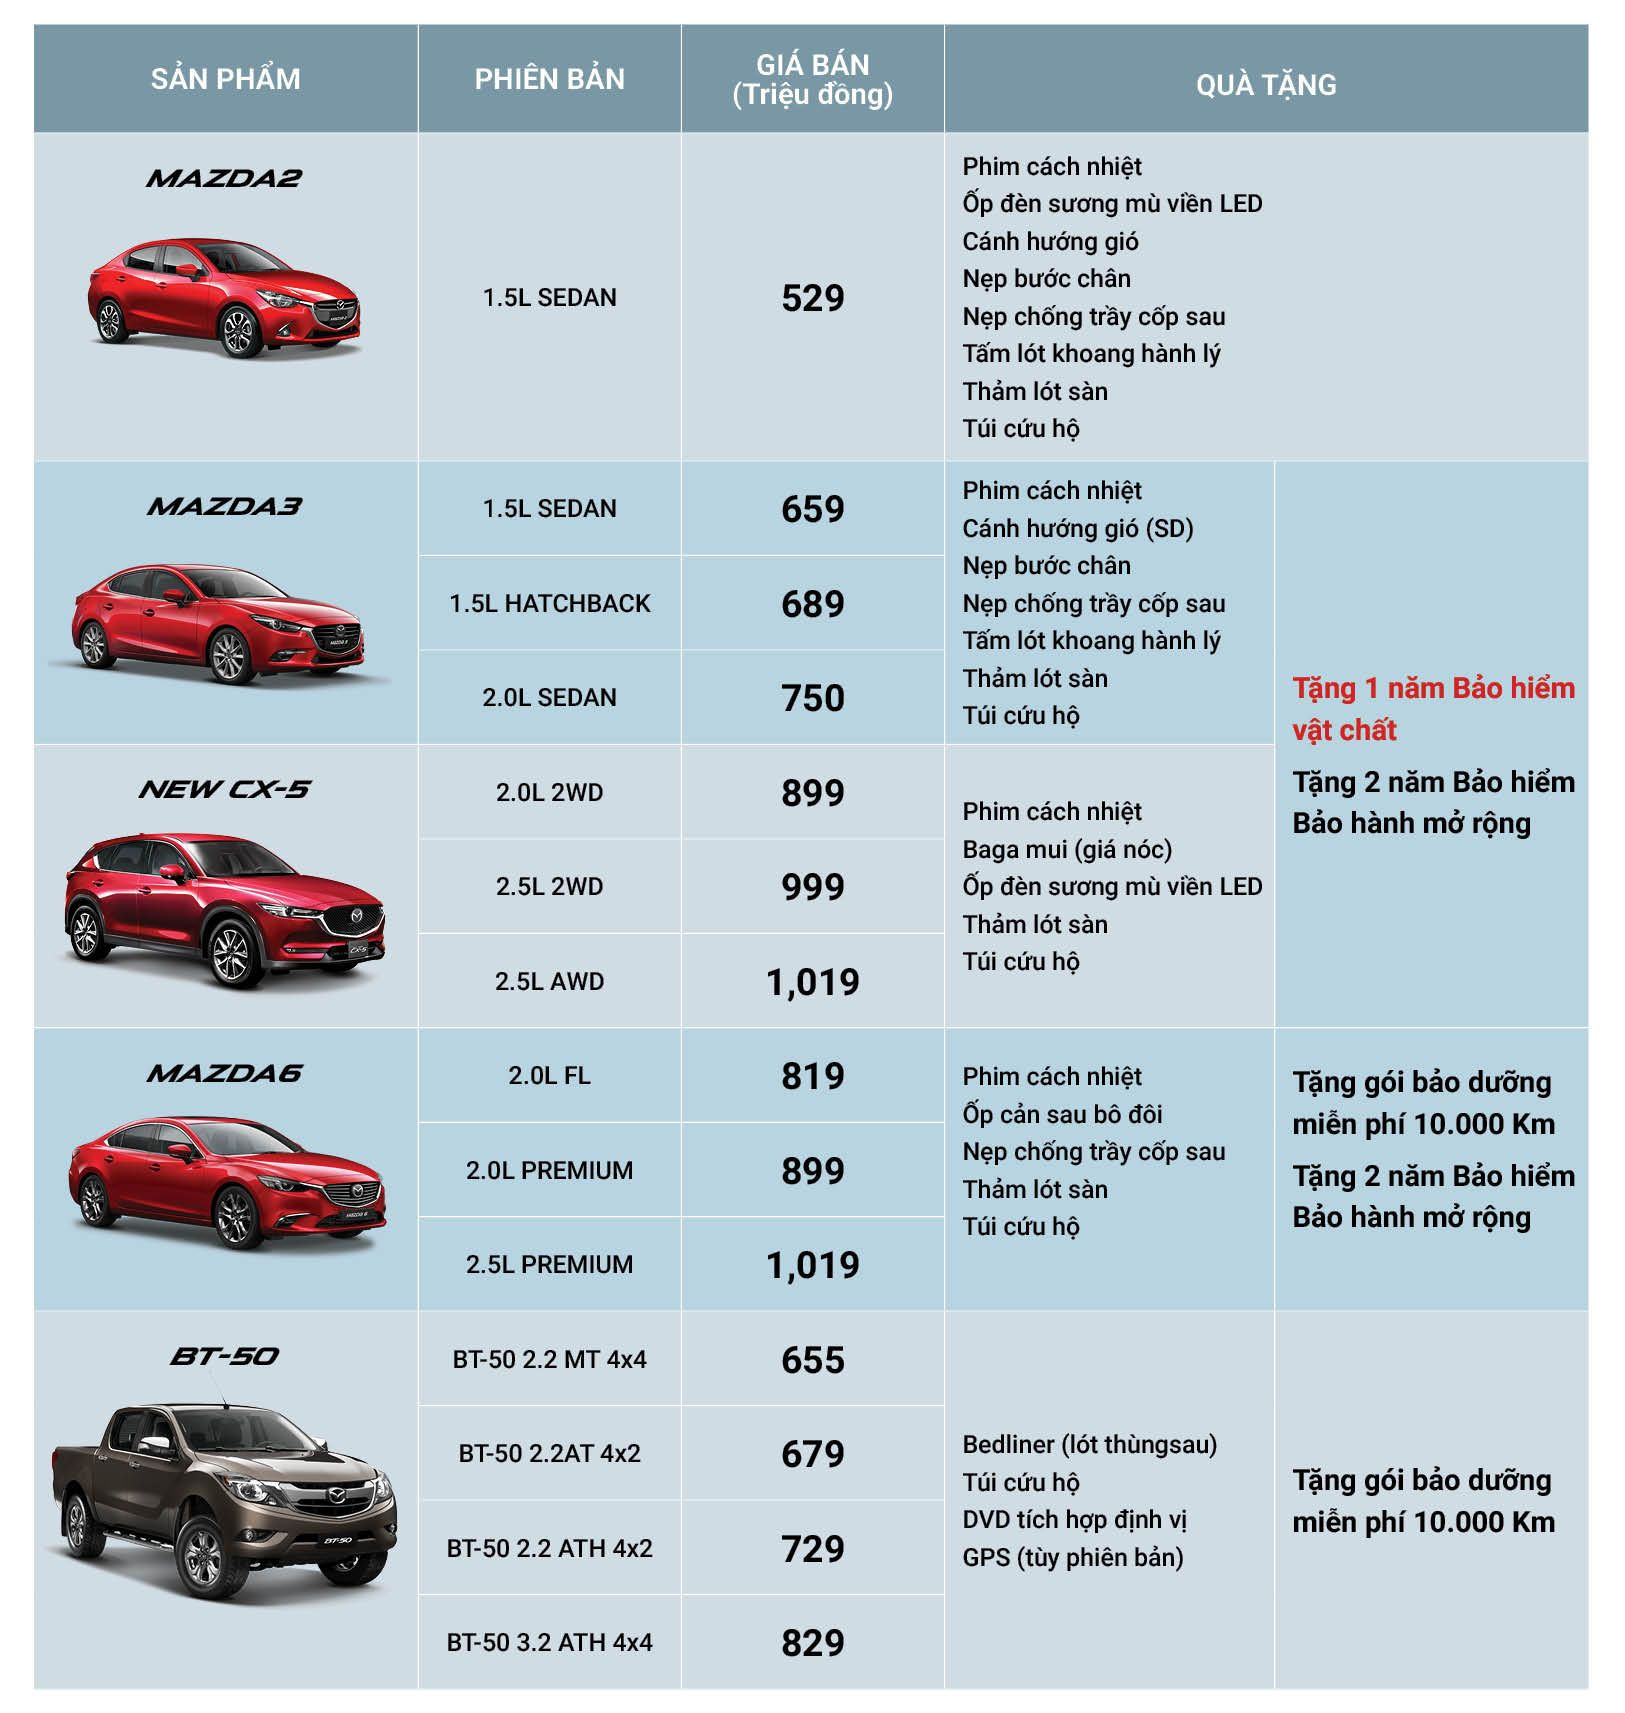 Bảng giá và chương trình khuyến mại của Mazda tháng 10/2018.